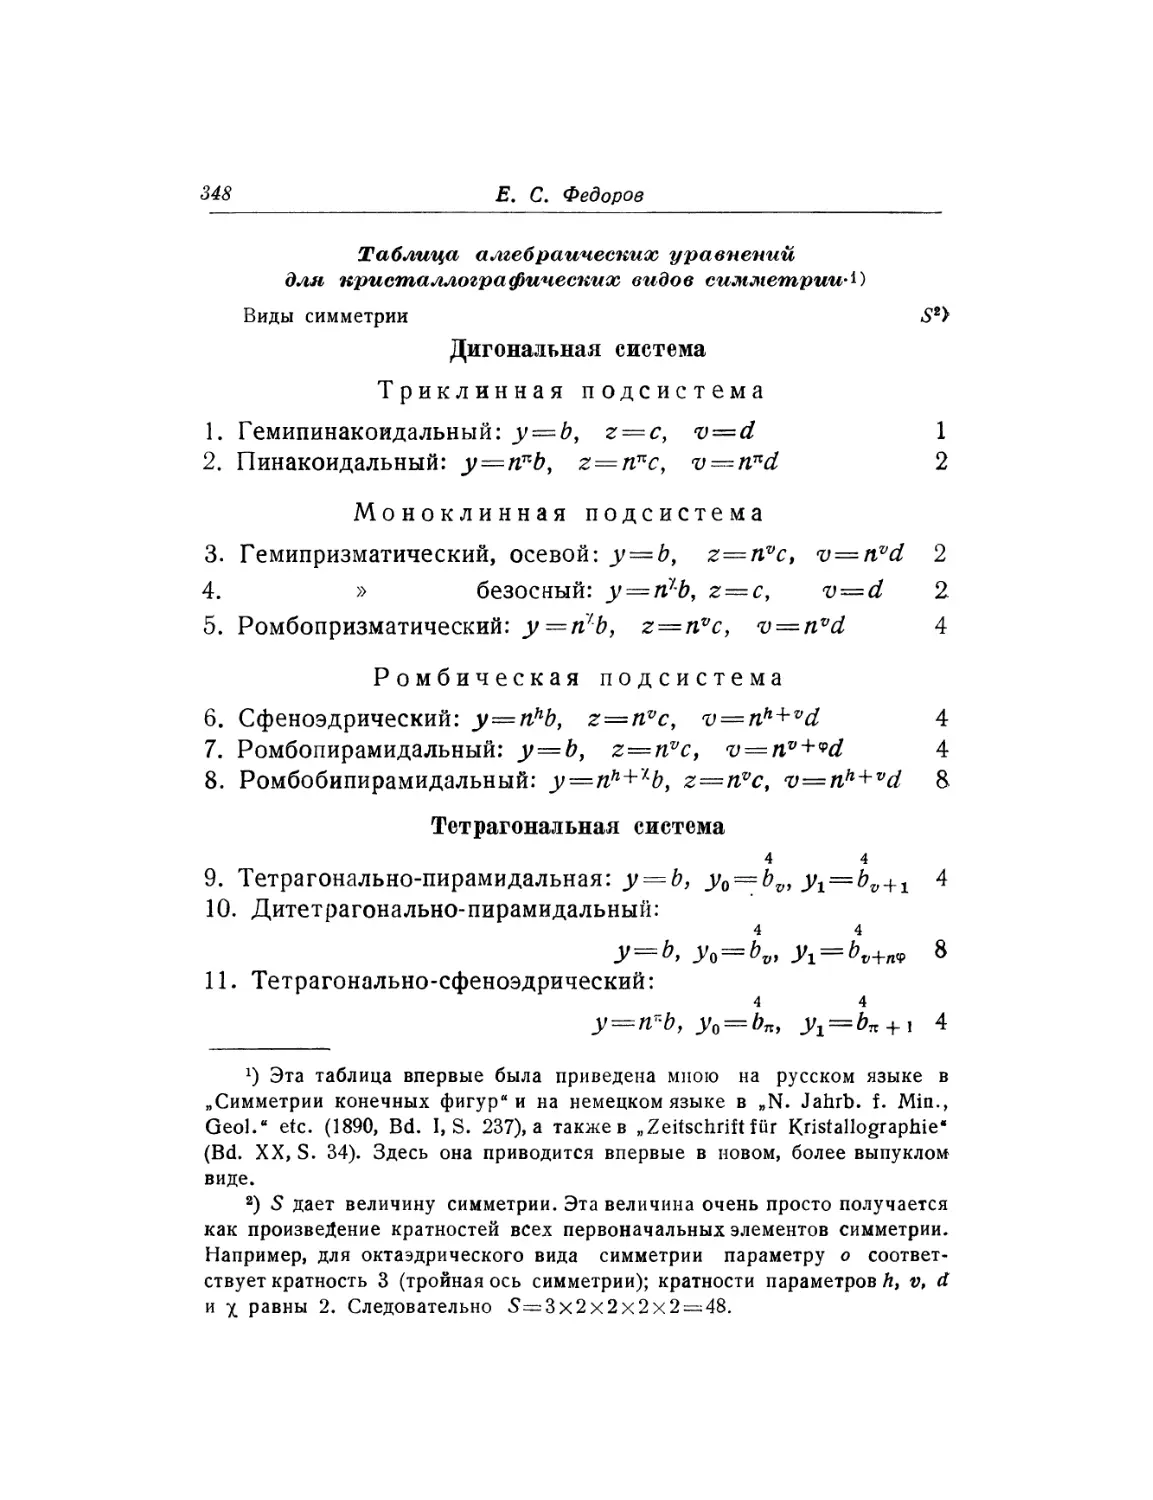 Таблица алгебраических уравнений для кристаллографических видов симметрии